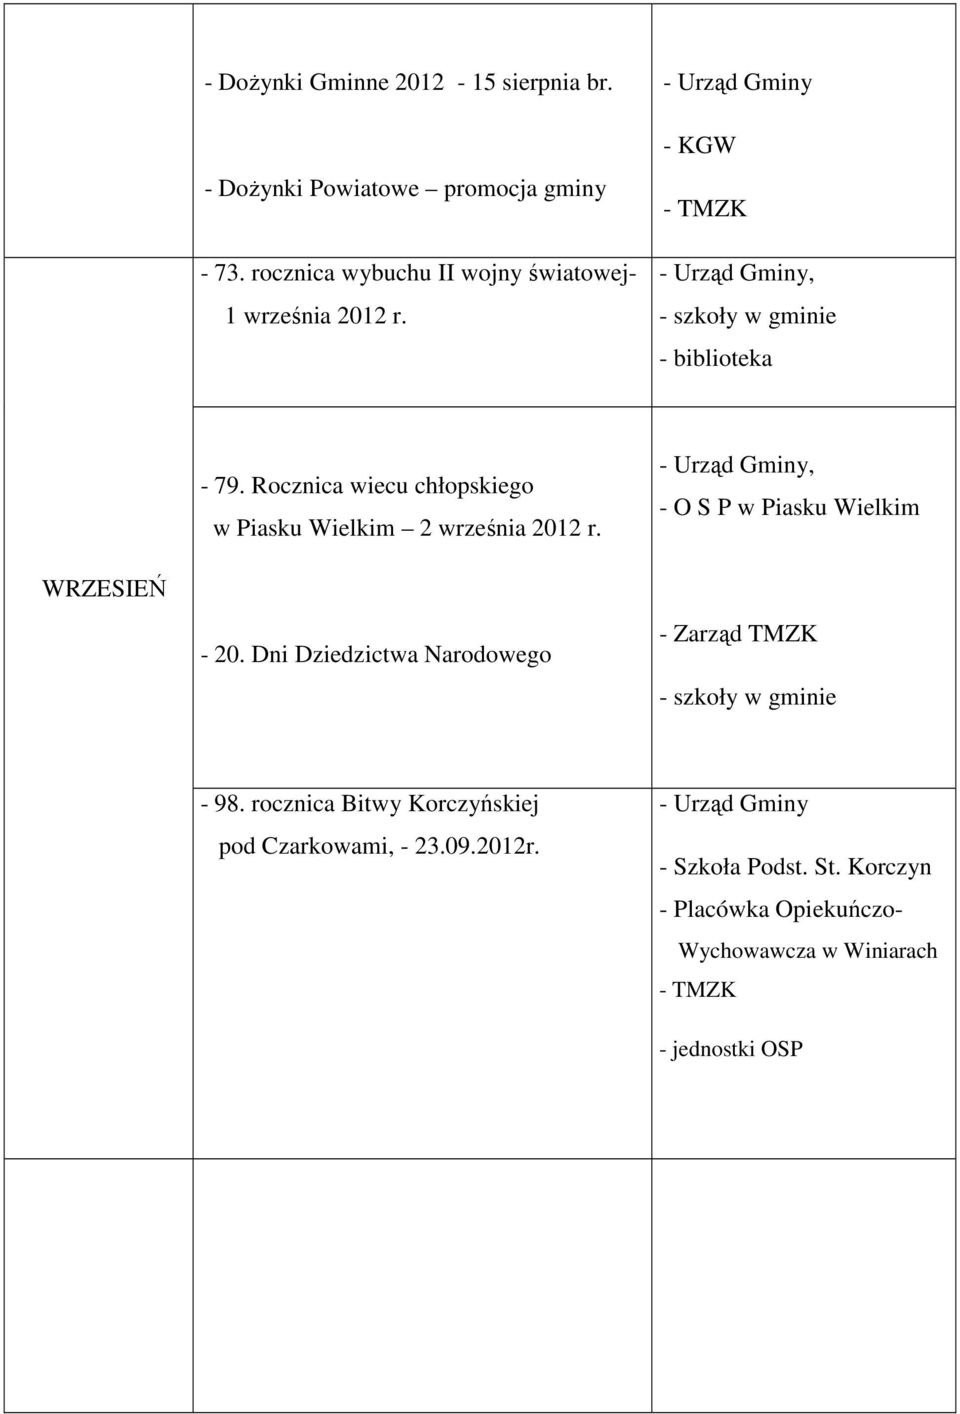 Rocznica wiecu chłopskiego w Piasku Wielkim 2 września 2012 r., - O S P w Piasku Wielkim WRZESIEŃ - 20.